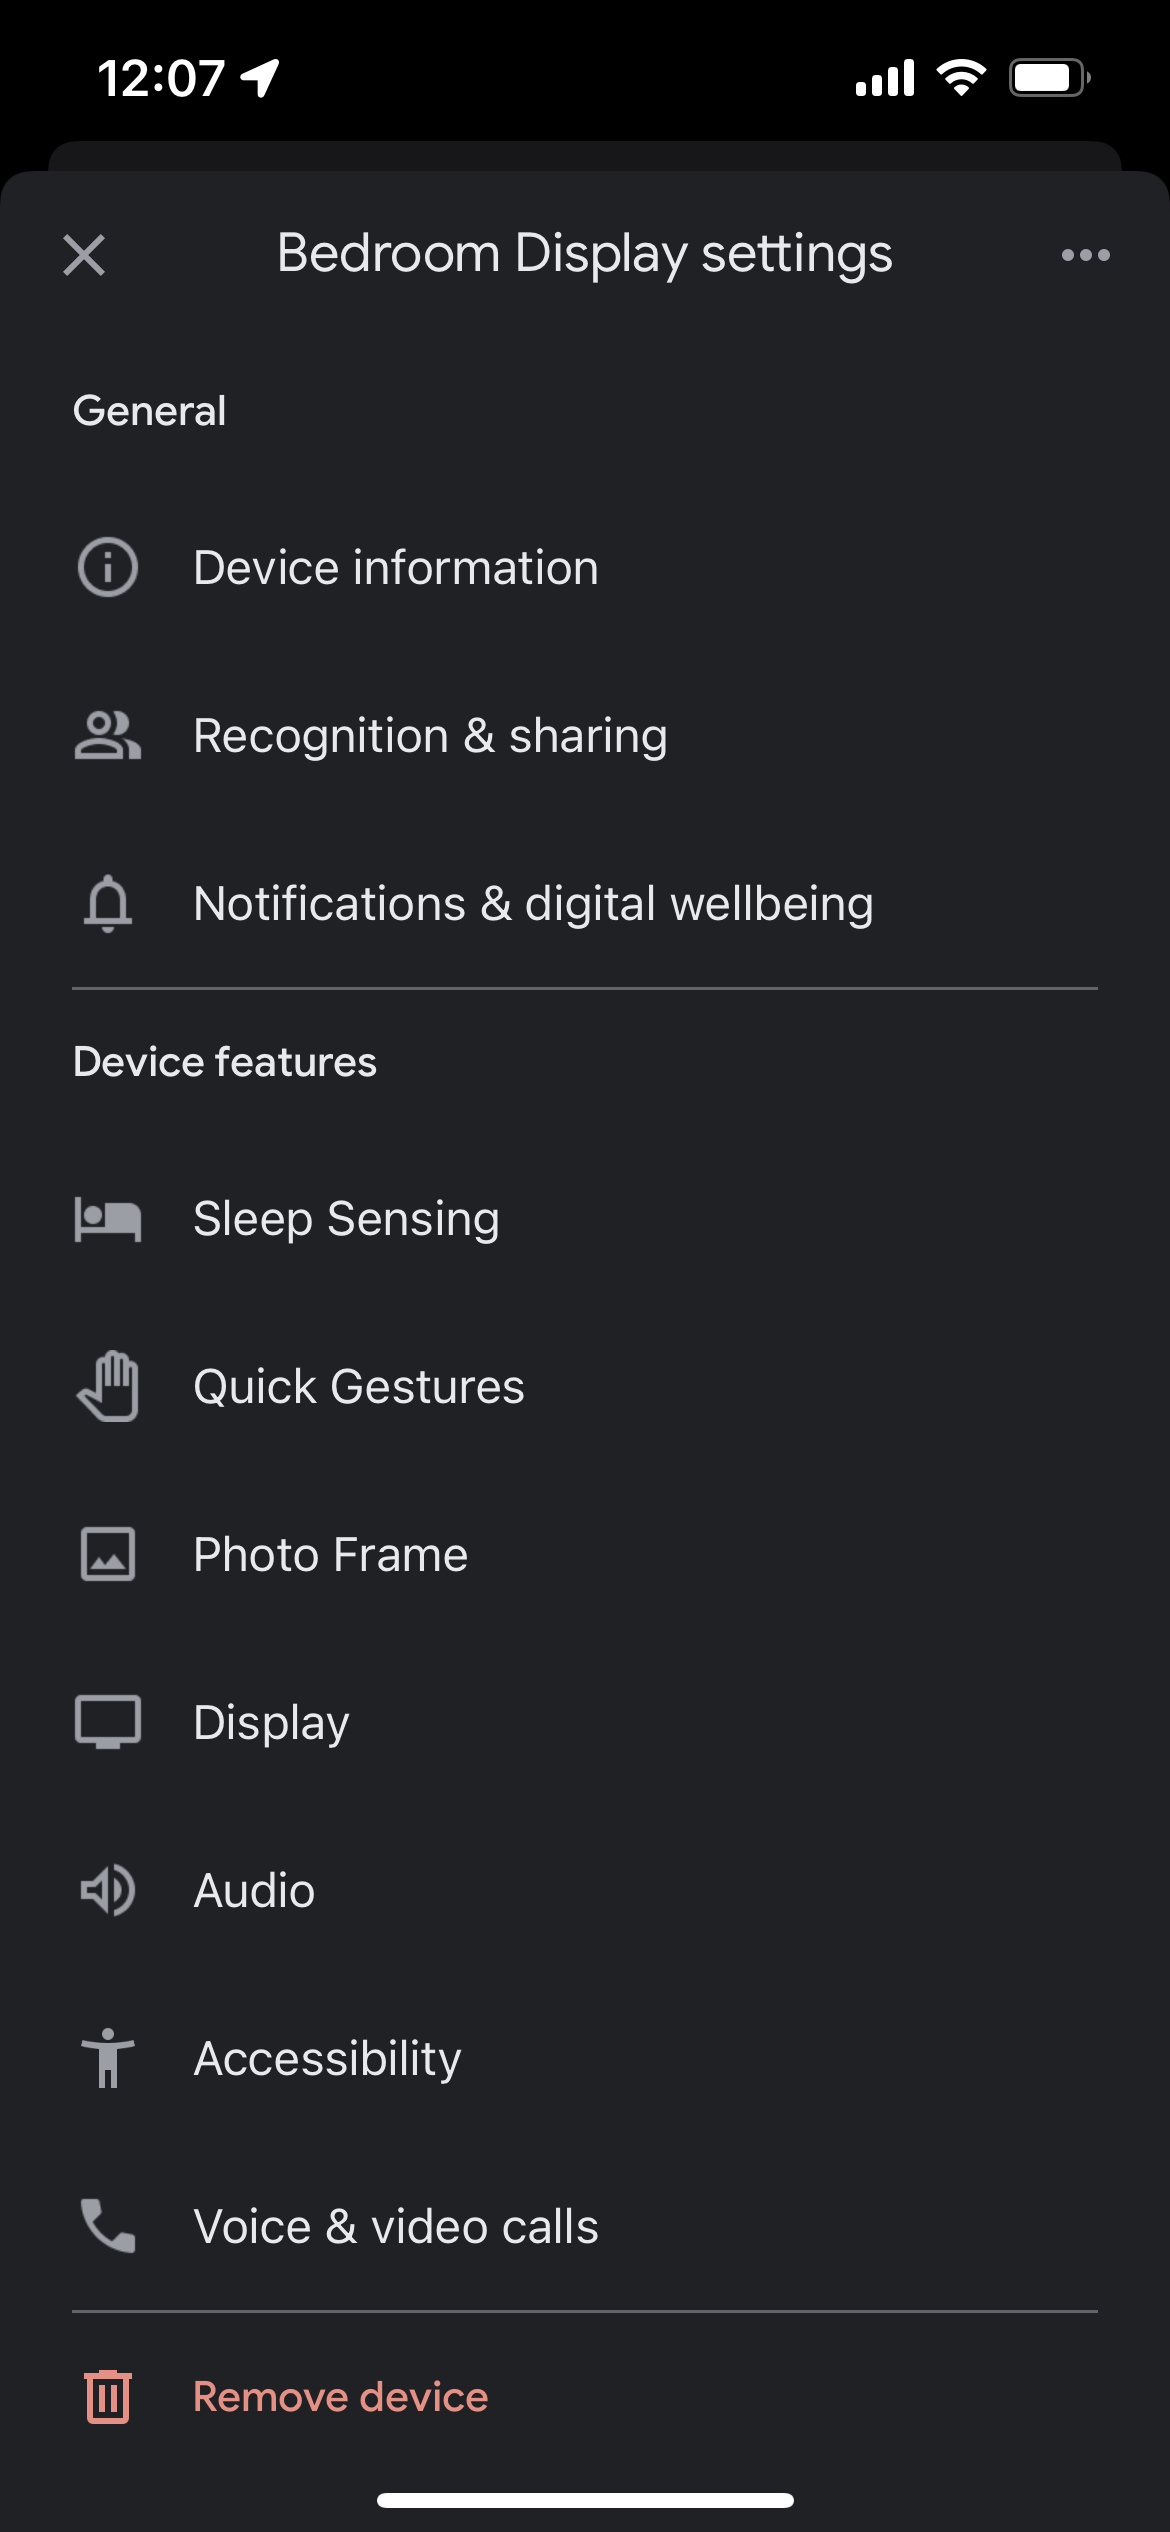 Nest Hub settings in the Google Home app